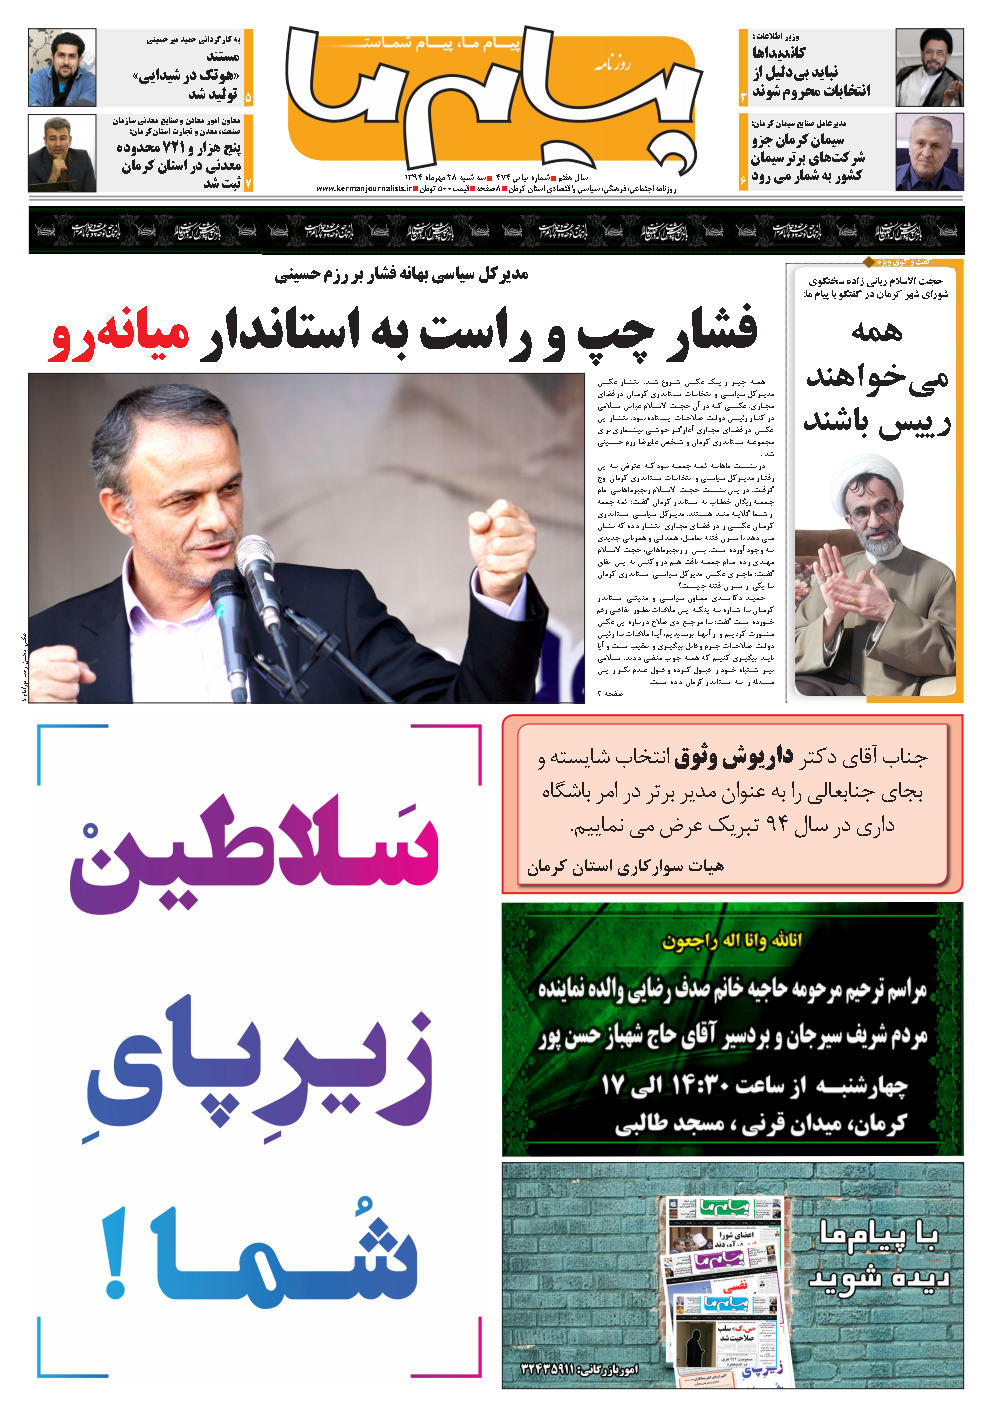 مدیرکل سیاسی بهانه فشار بر رزم حسینی فشار چپ و راست به استاندار میانه رو